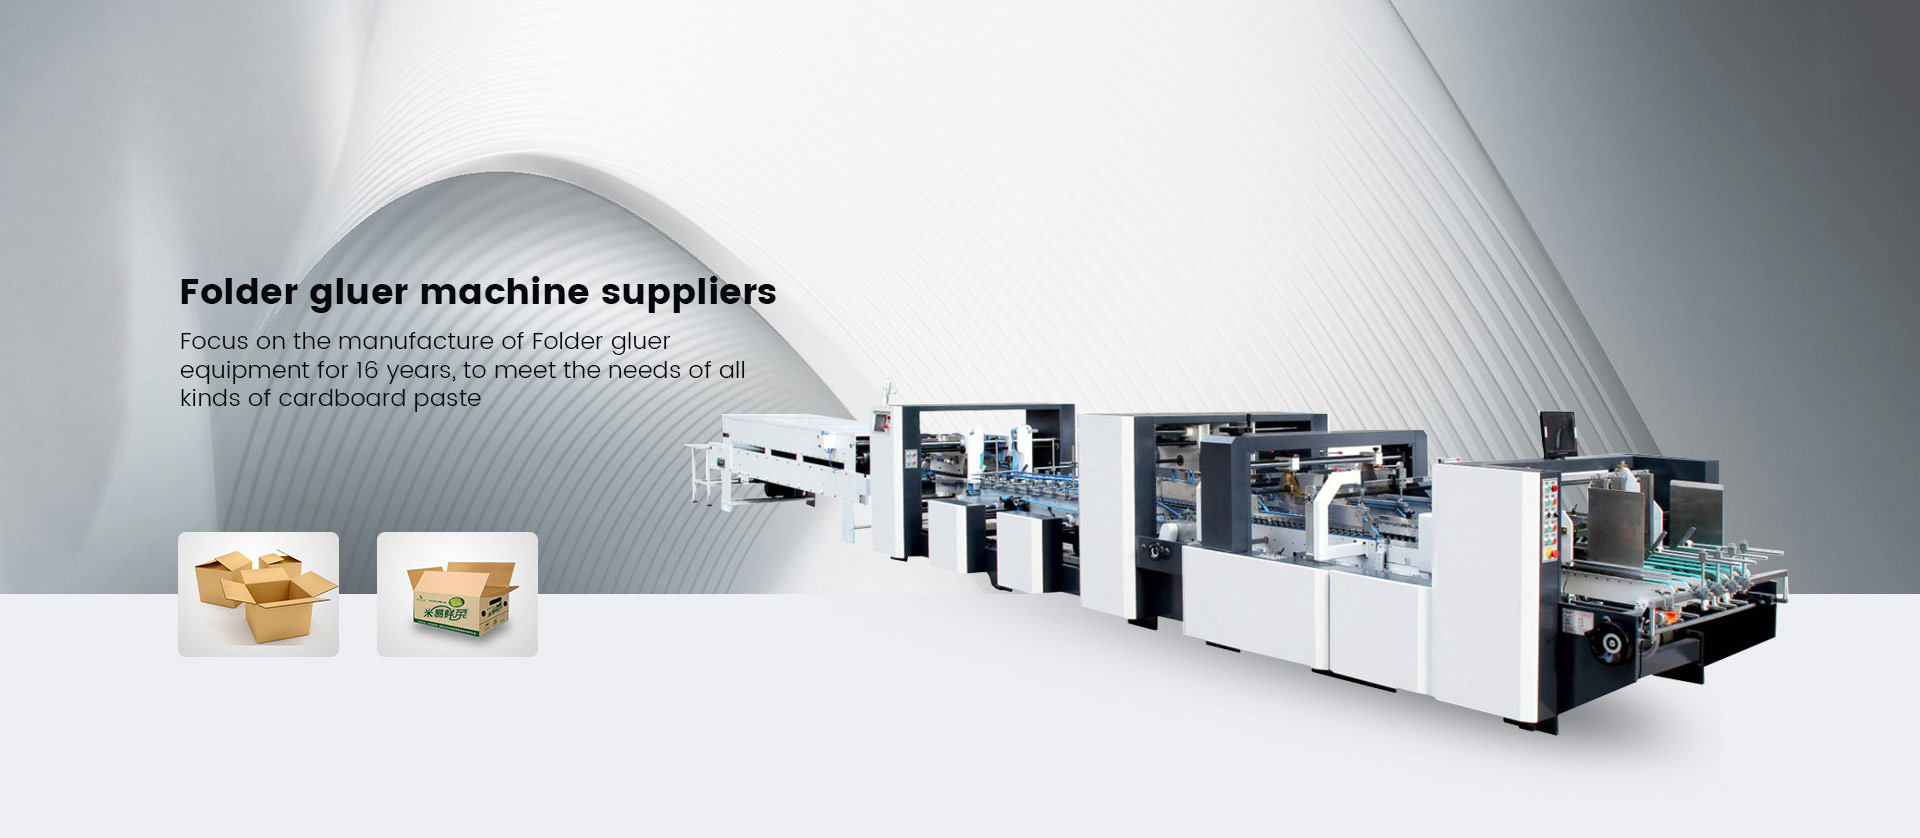 Folder gluer machine suppliers